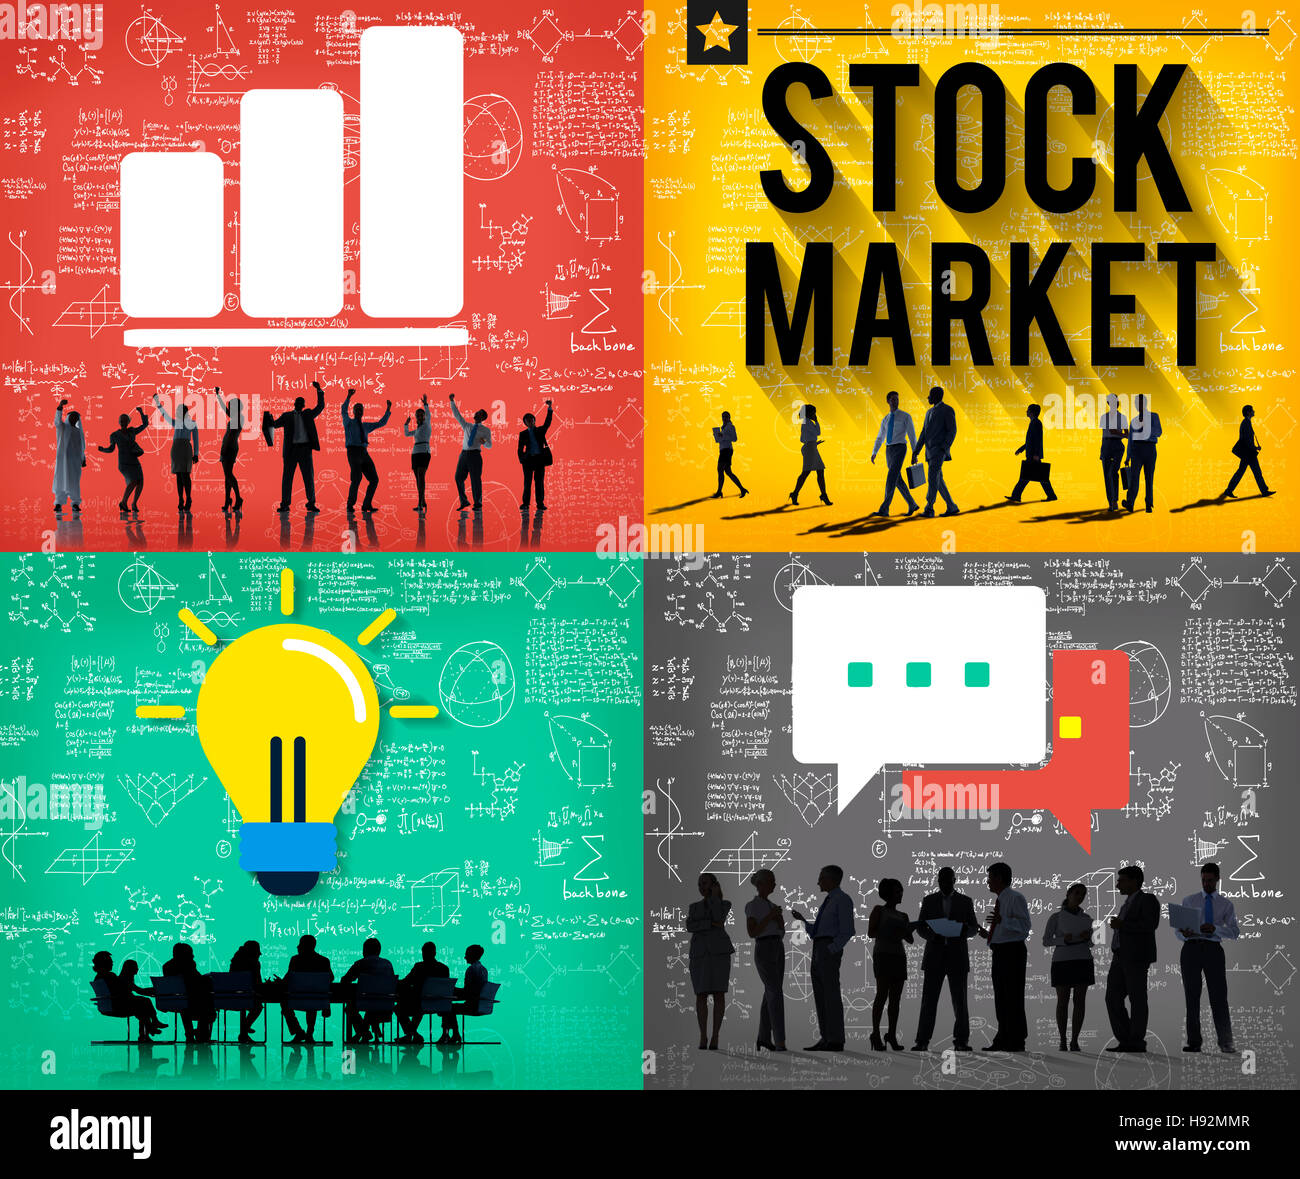 Stock Market Risk Aktionär Finance-Konzept Stockfoto